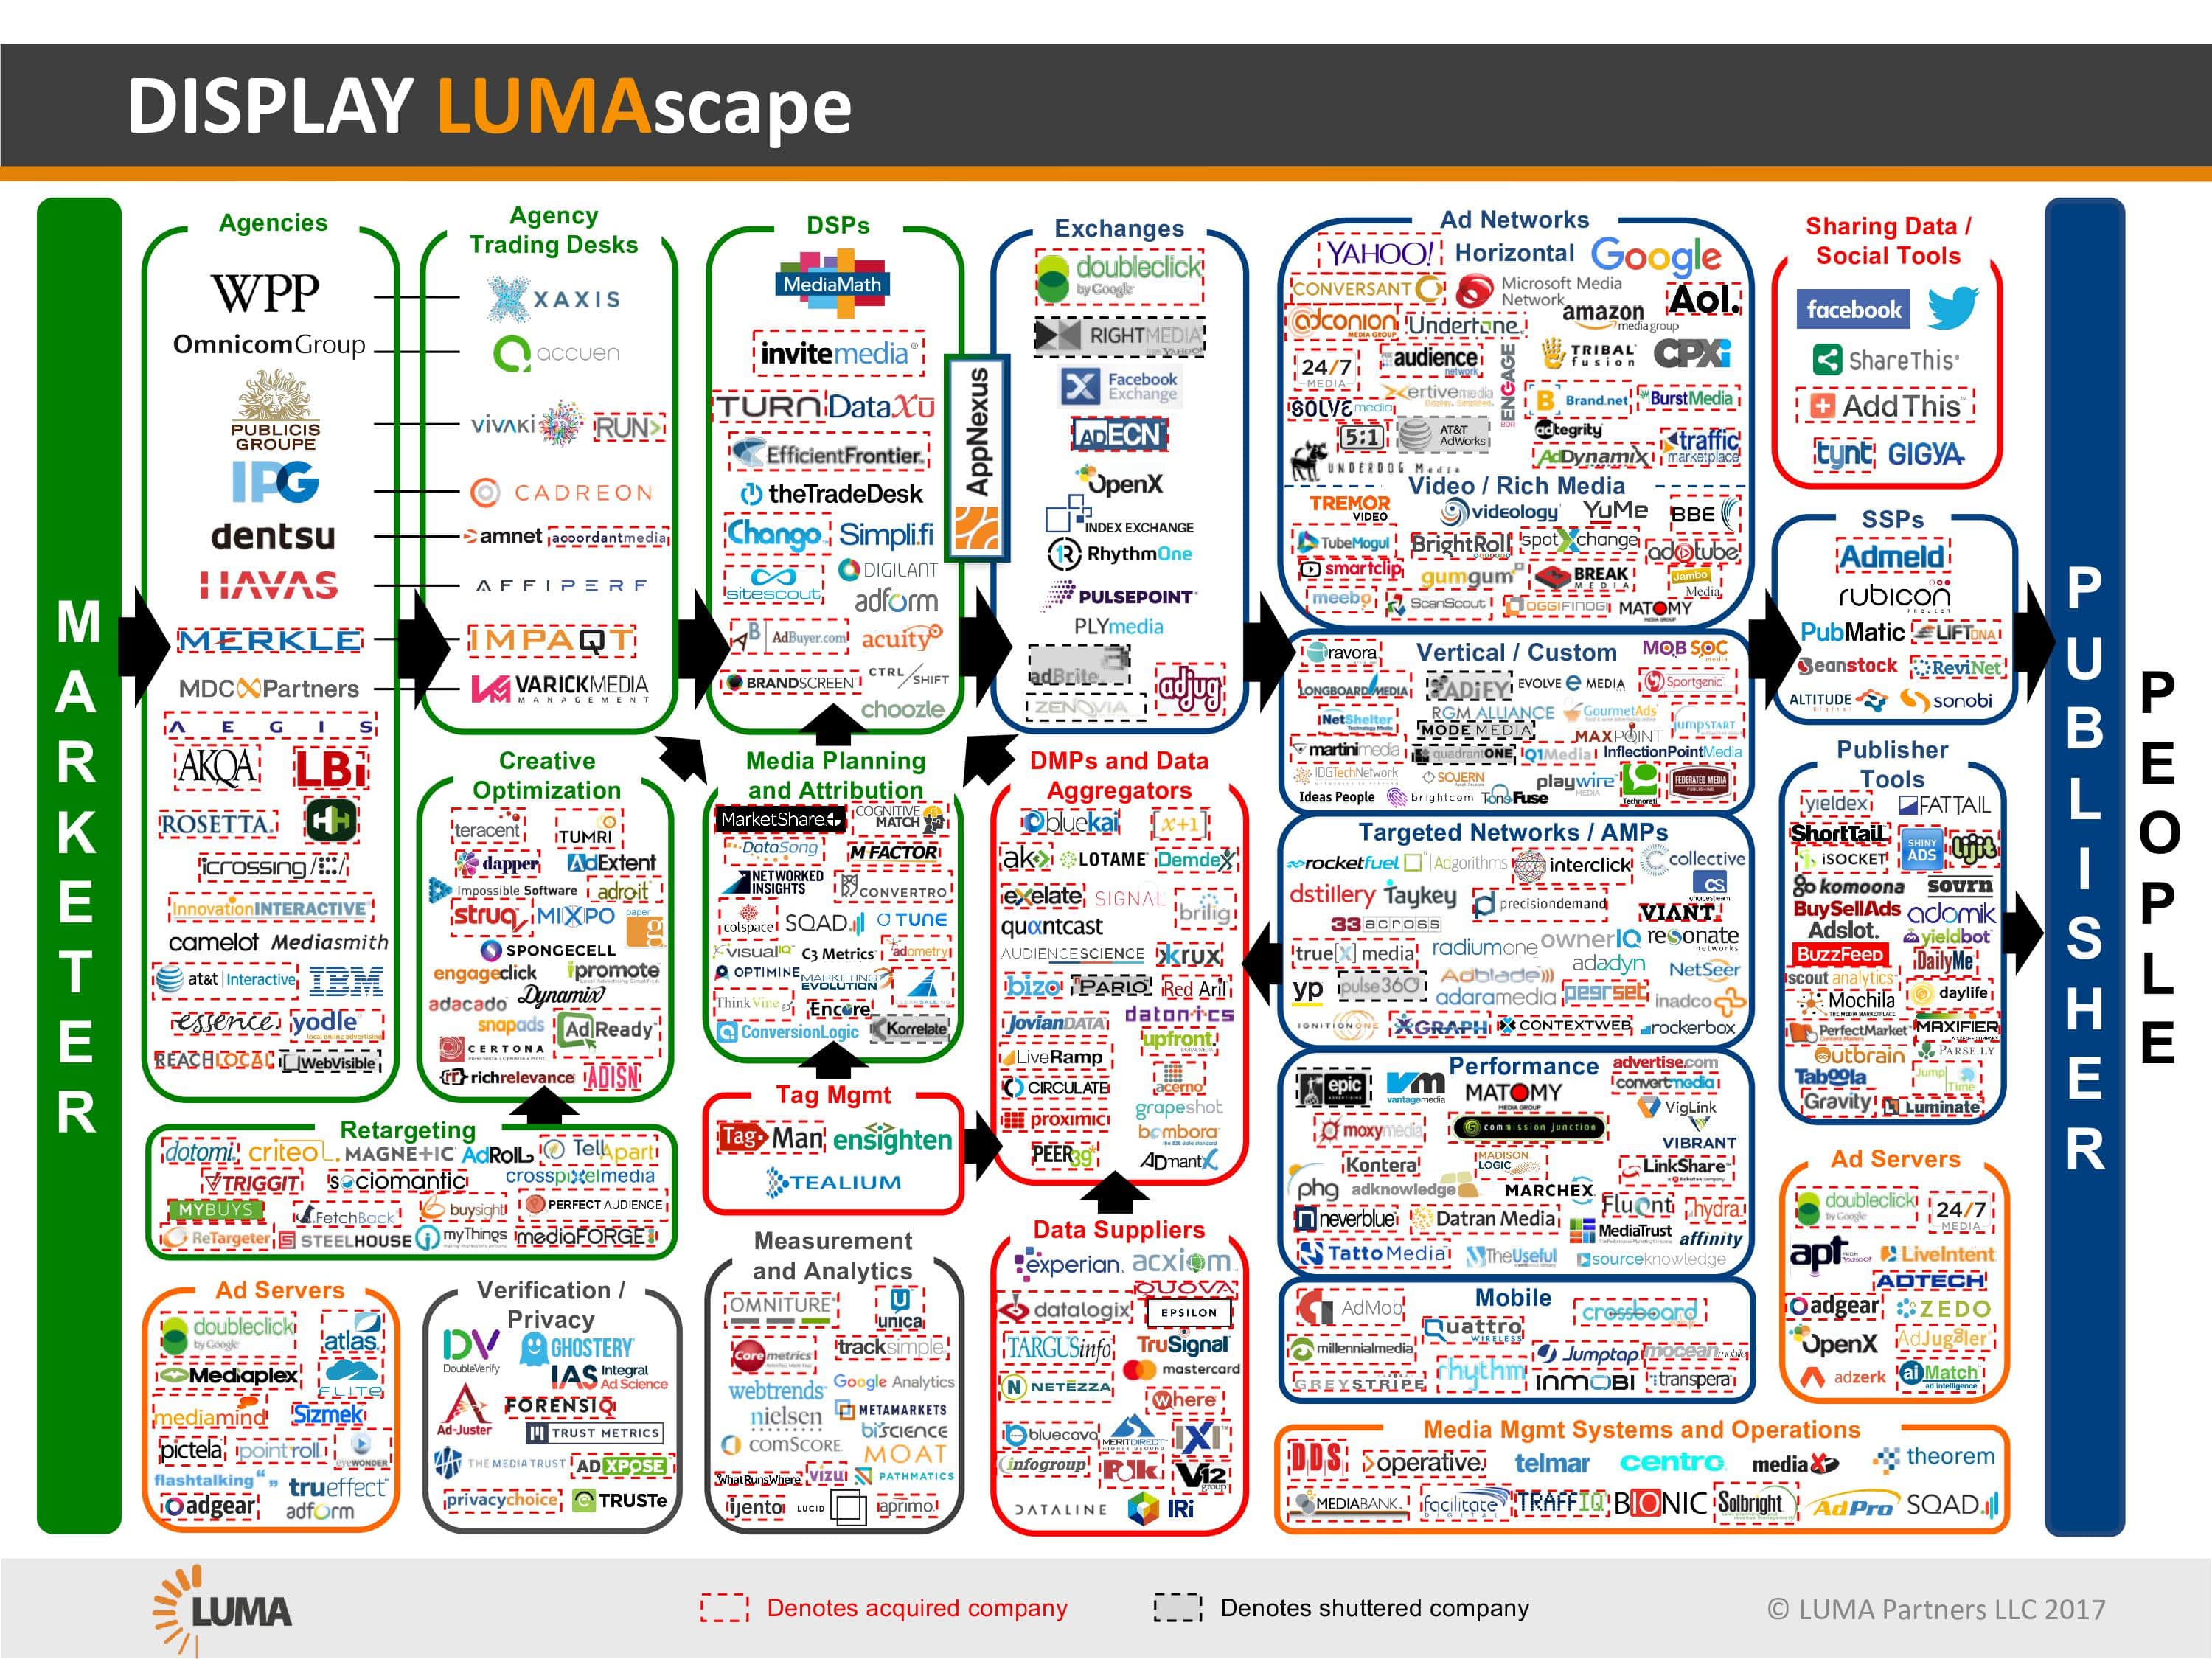 Digital Media Buying LUMAscape